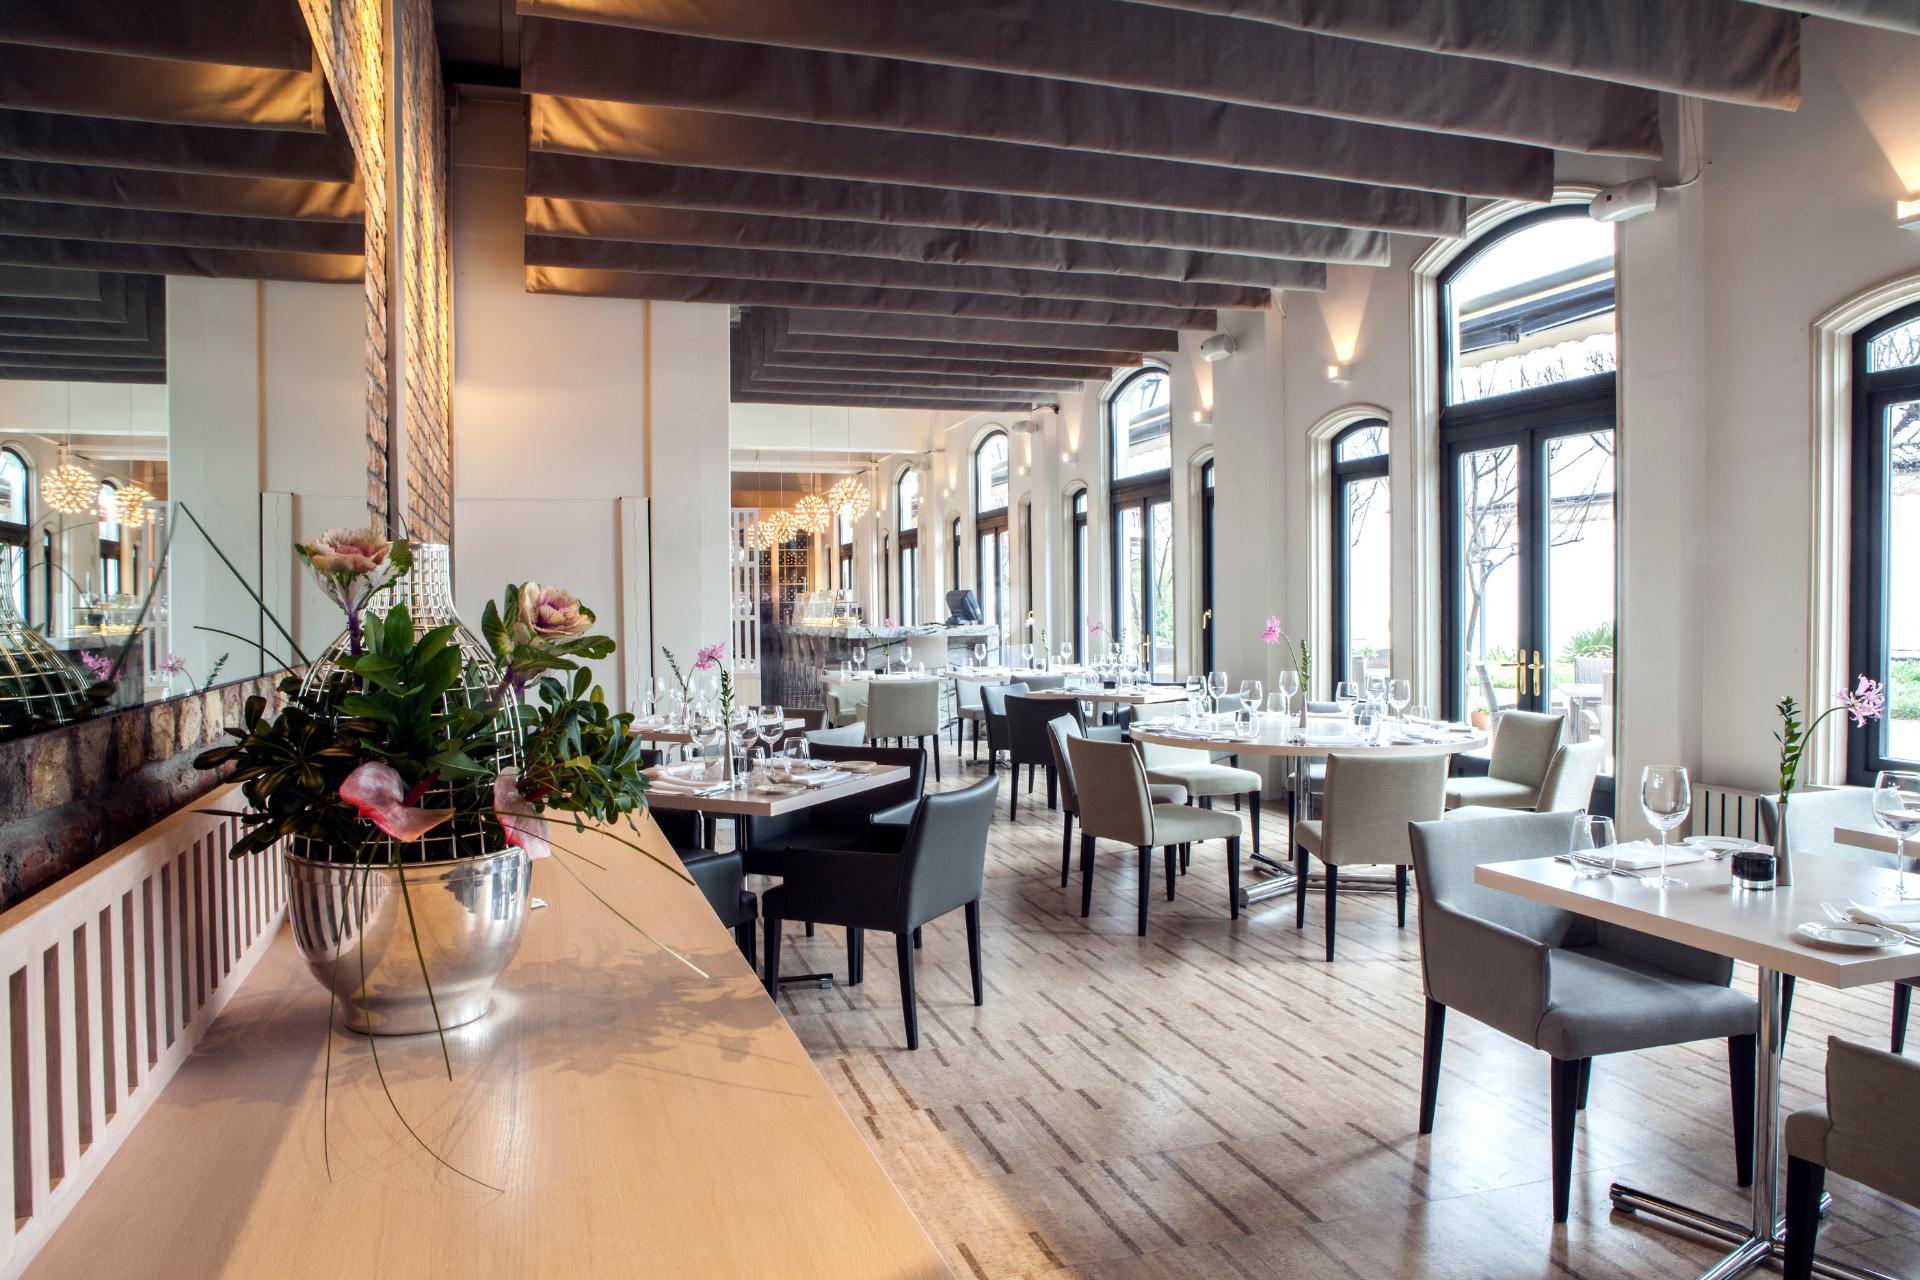 Área de servicio de un restaurante, frente del restaurante elegante con mesas puestas y ventanas panorámicas